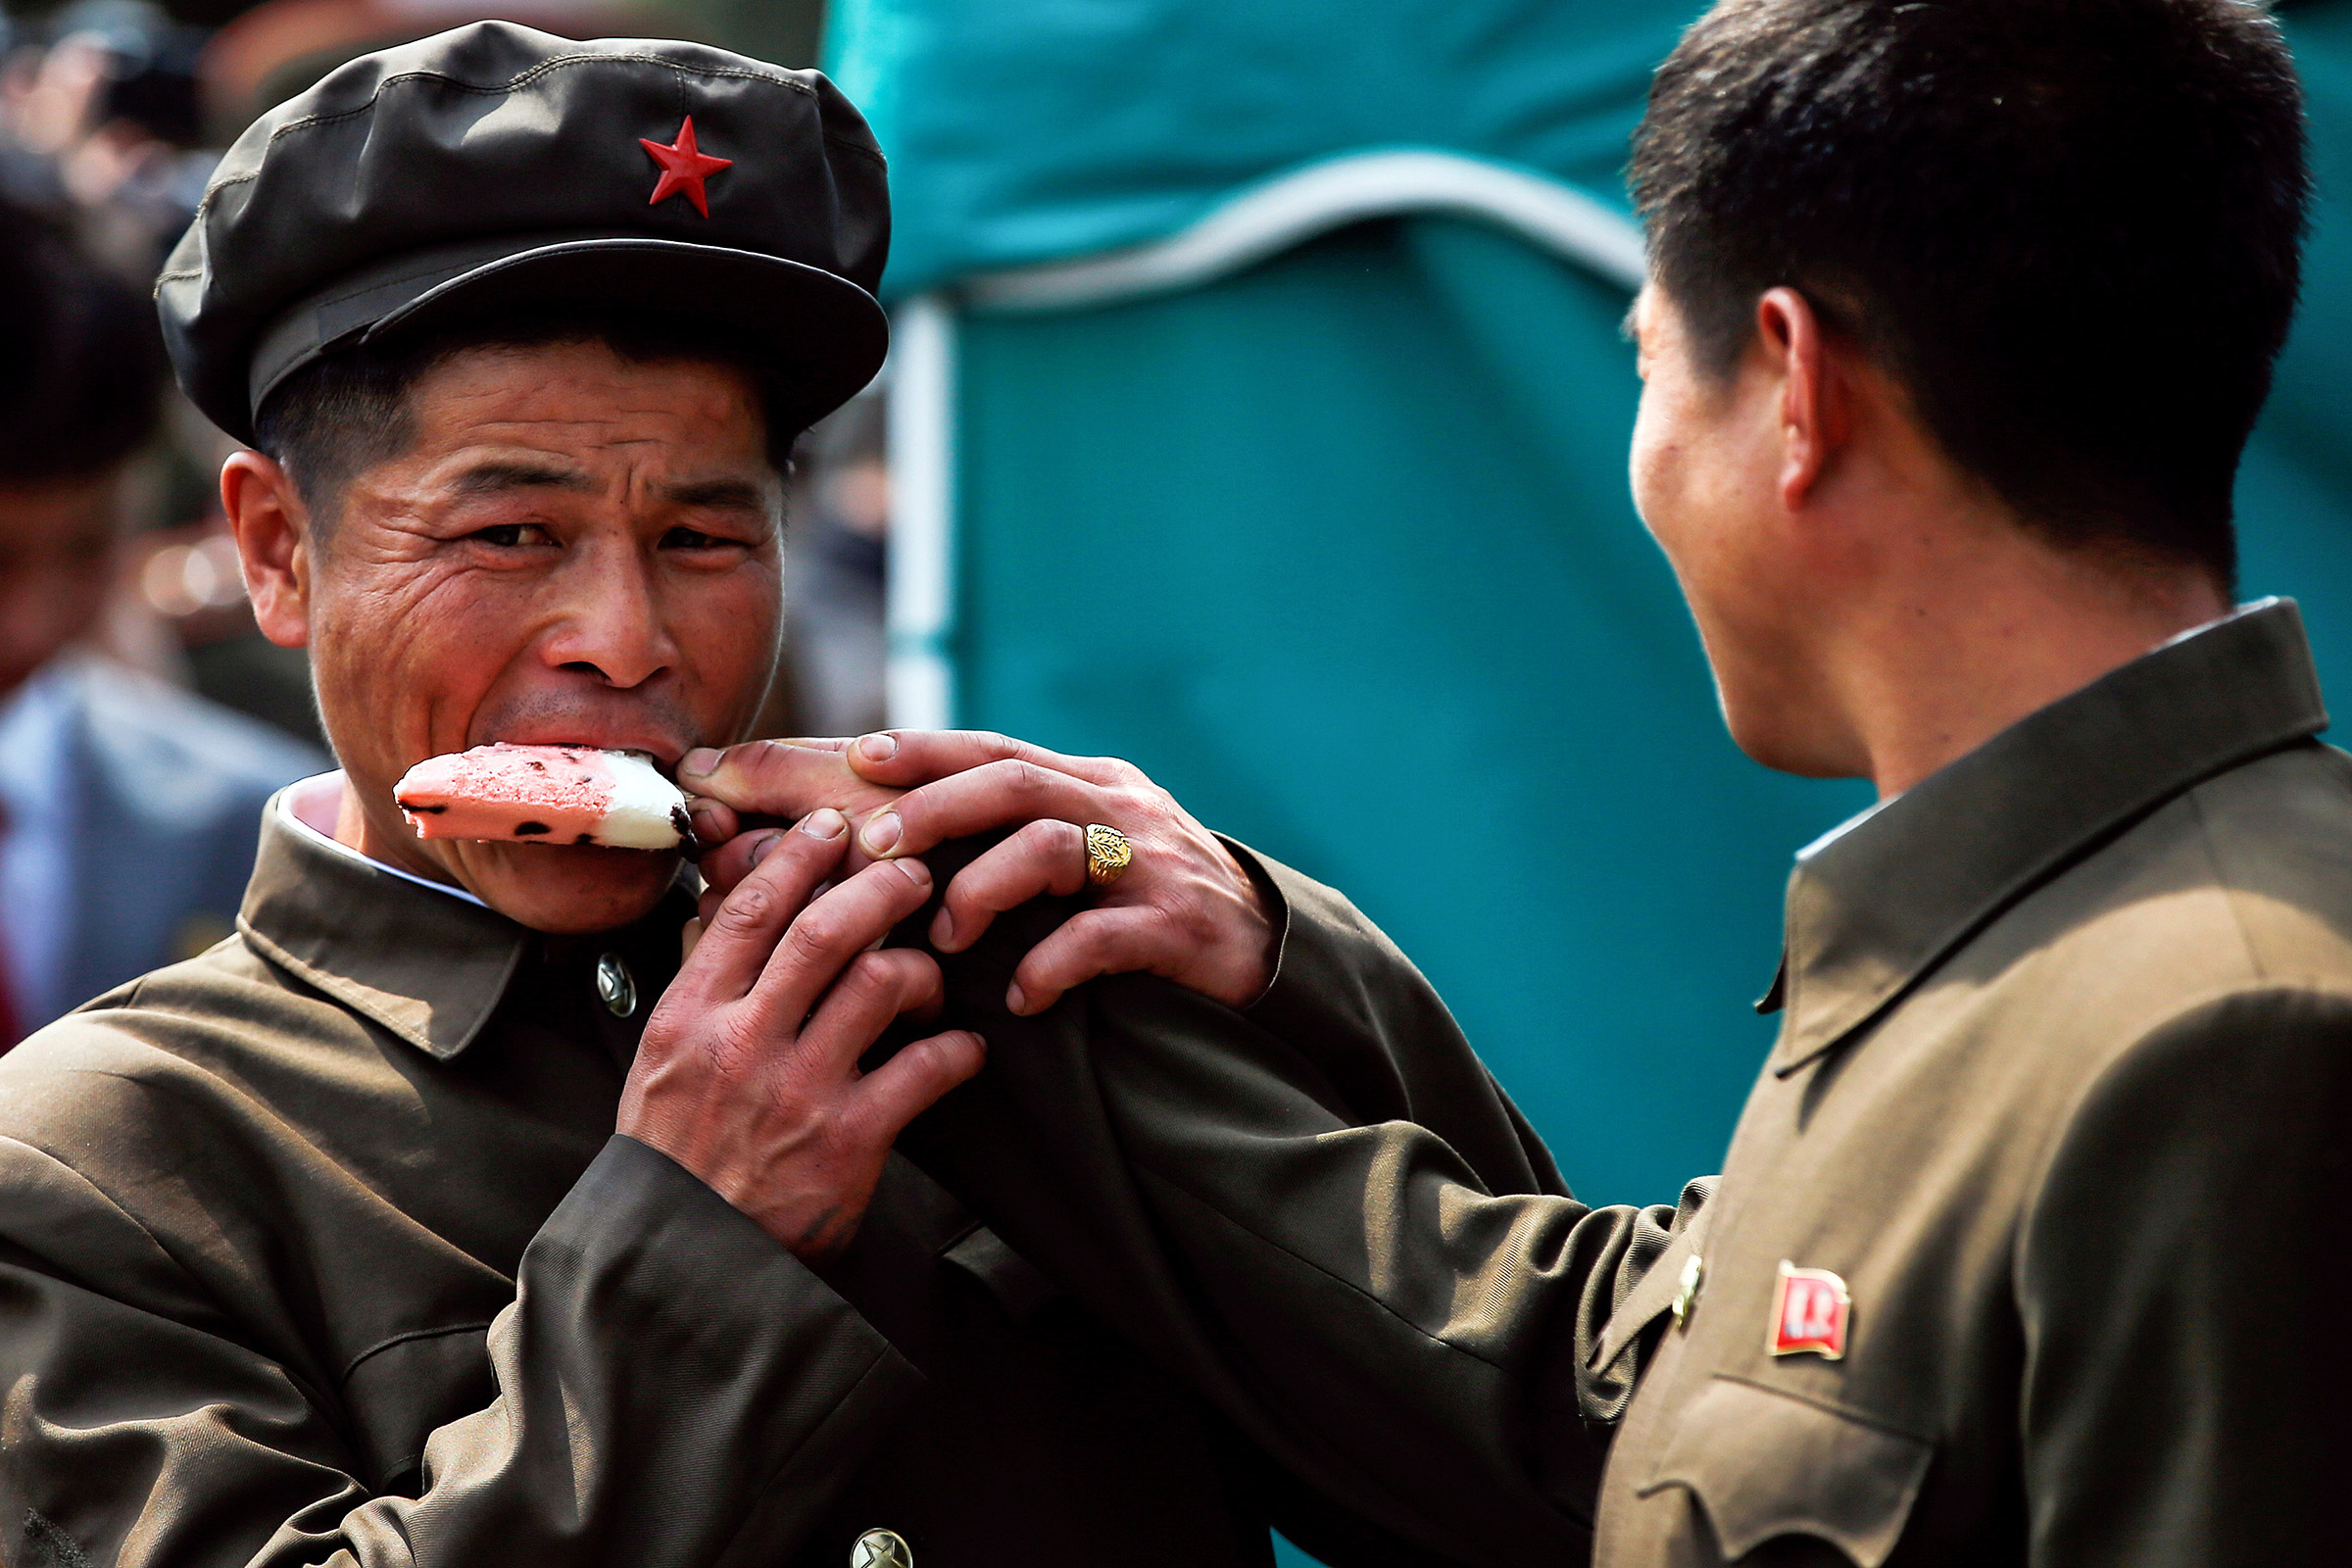 Апрель 2017 года. Мужчина делится мороженым с сослуживцем в Пхеньяне, КНДР
&nbsp;
